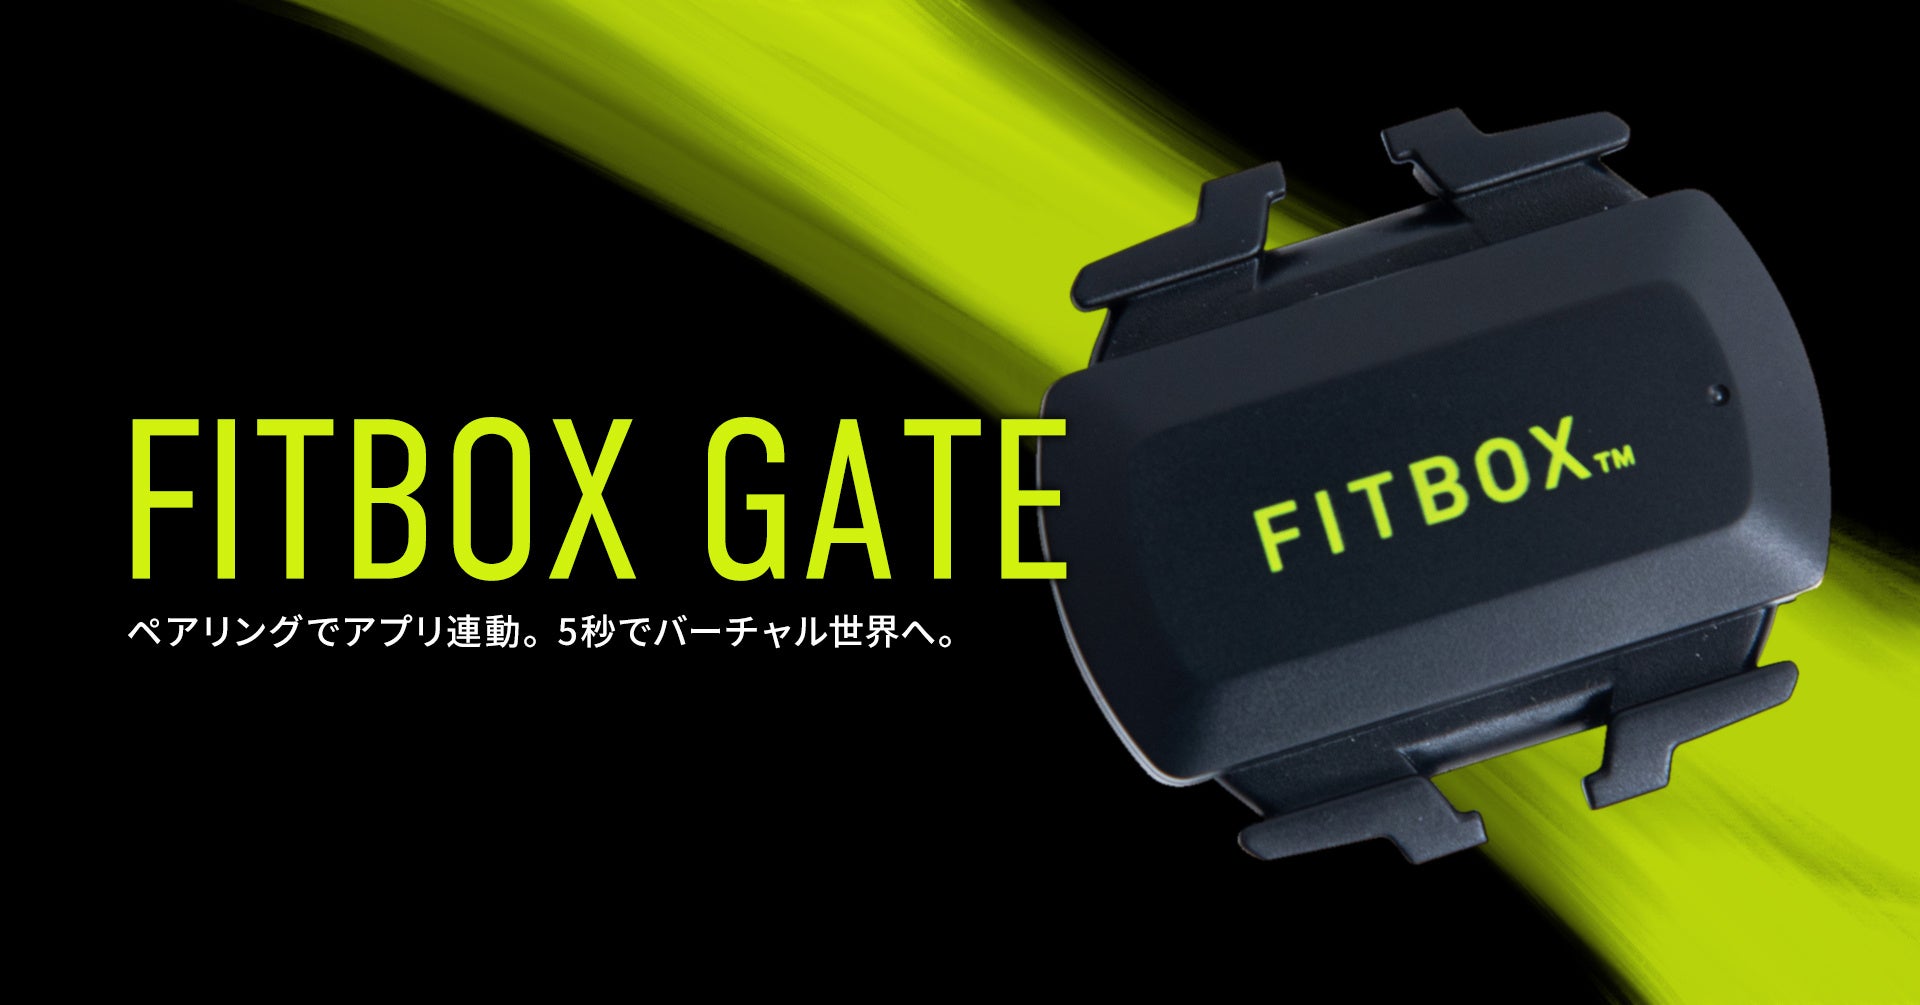 『FITBOX』のインドアトレーニングがさらに進化、ブランド初のケイデンスセンサー「FITBOX  GATE」がローンチ